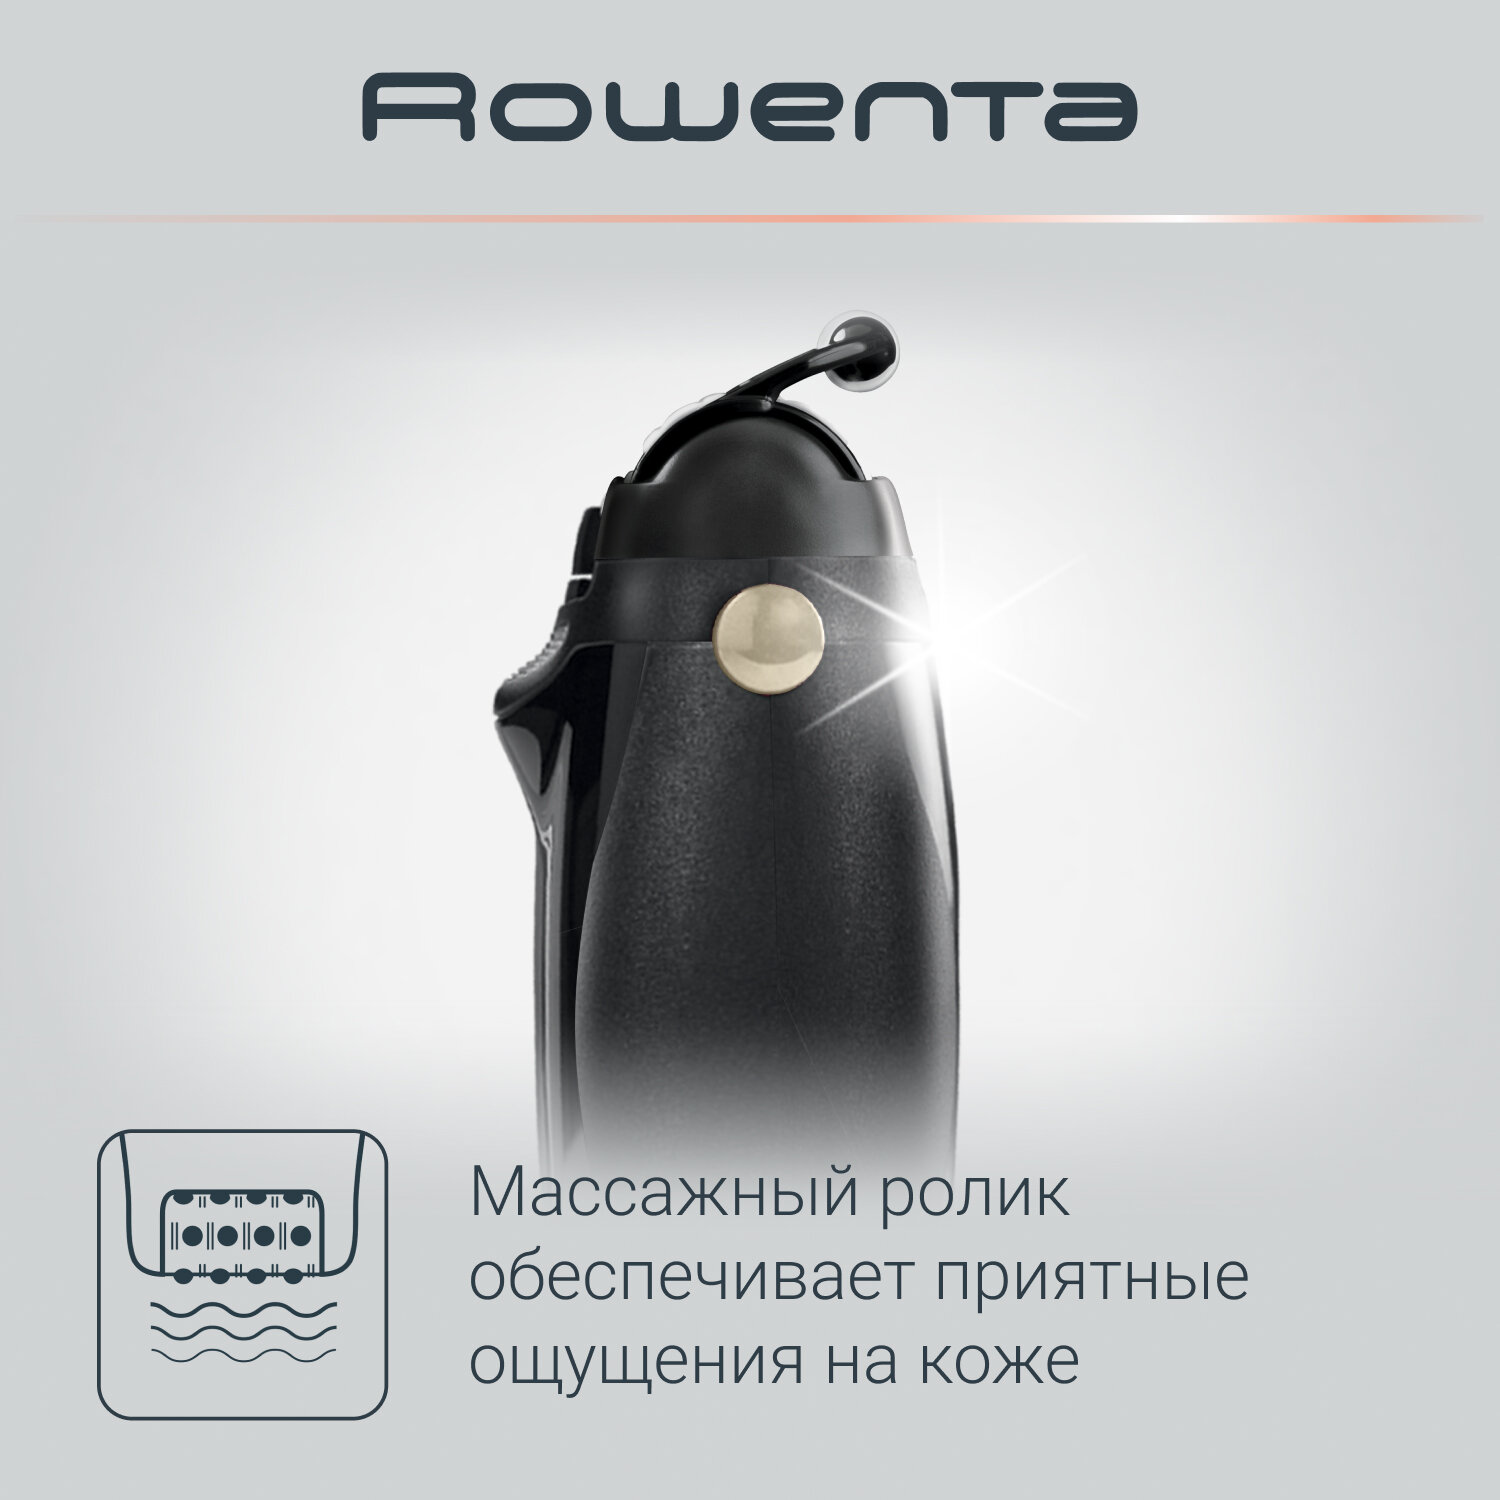 Эпилятор женский Rowenta Silence Soft Magic Nature EP5628F0, черный, 2 скорости, встроенная подсветка, съемная моющаяся головка